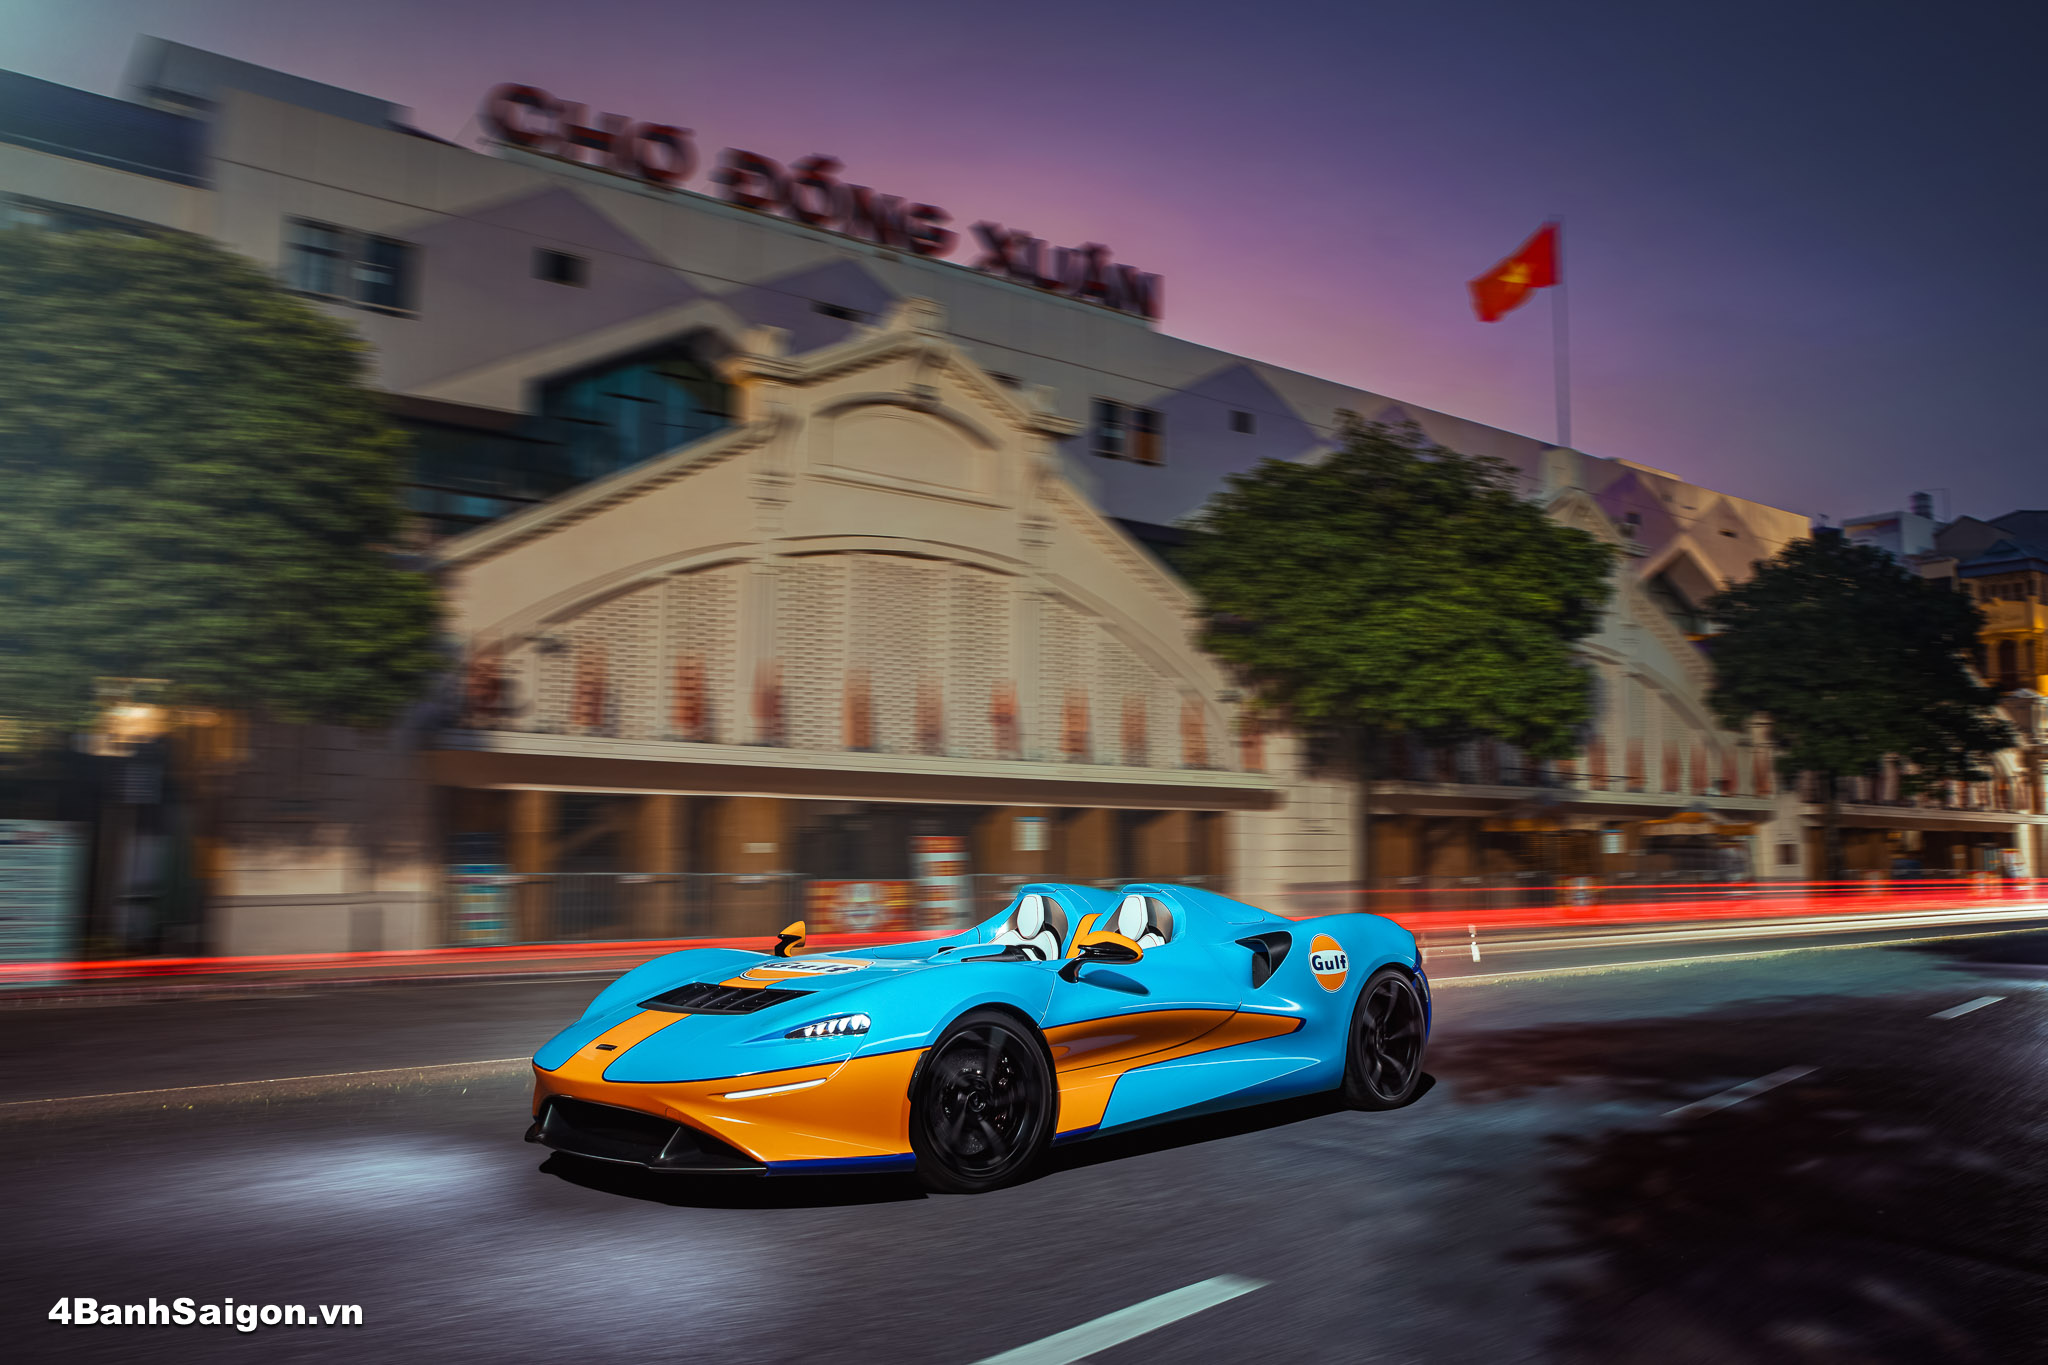 McLaren Elva thả dáng trước chợ Đồng Xuân có lịch sử hàng trăm năm trong phố cổ Hà Nội.